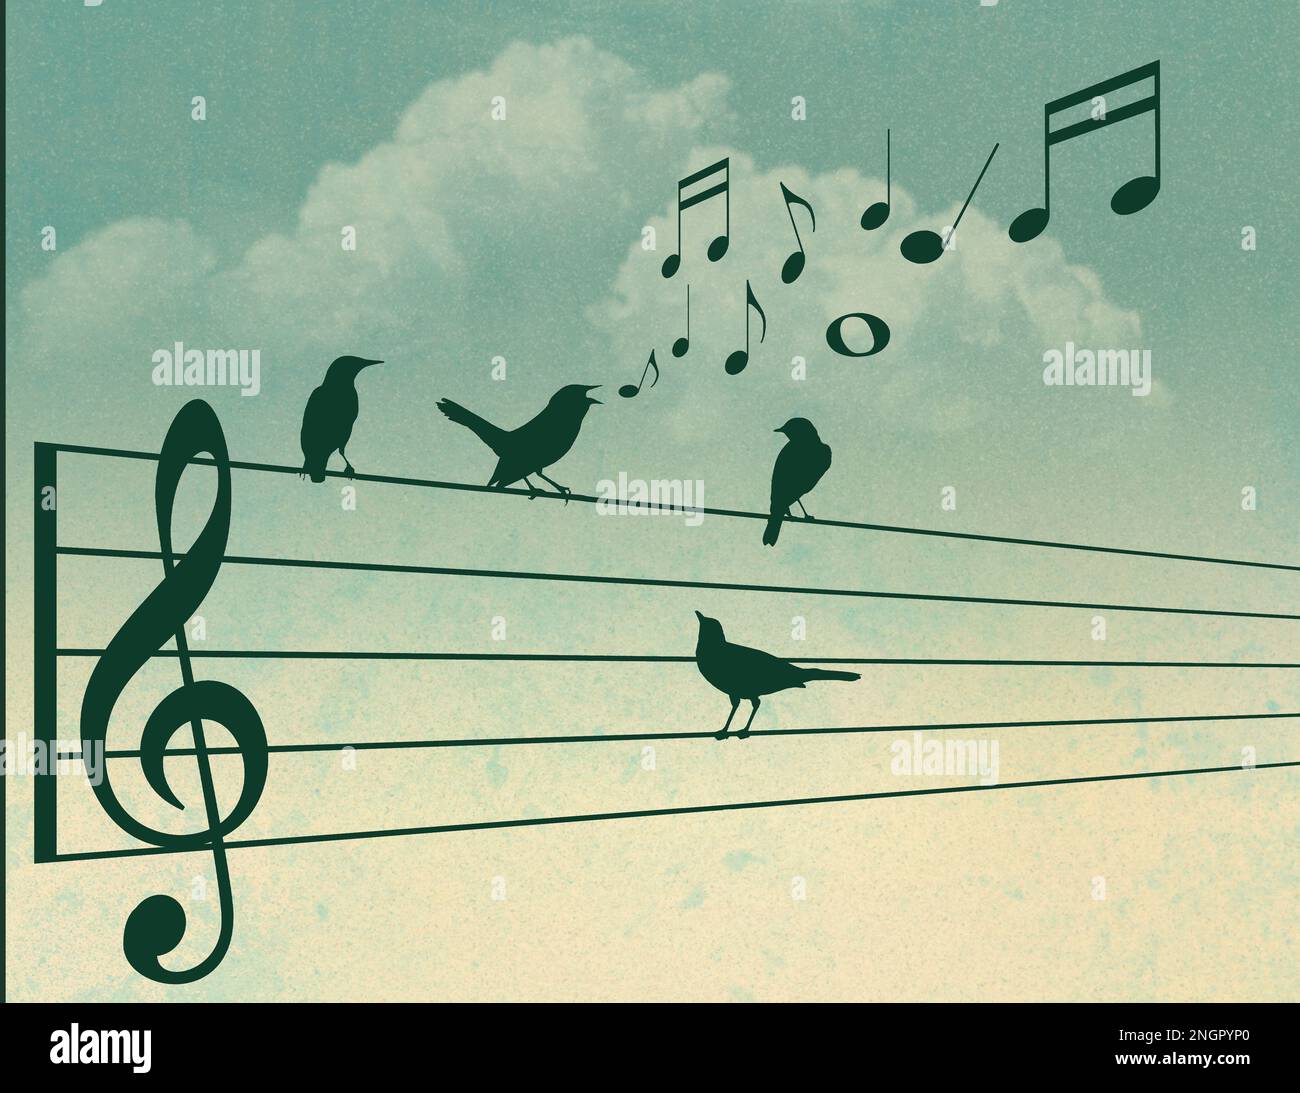 Les oiseaux se rassemblent autour d'un oiseau de chant talentueux qui chante tout en s'asseyant sur un personnel de clef d'aigus musical dans cette illustration. Banque D'Images